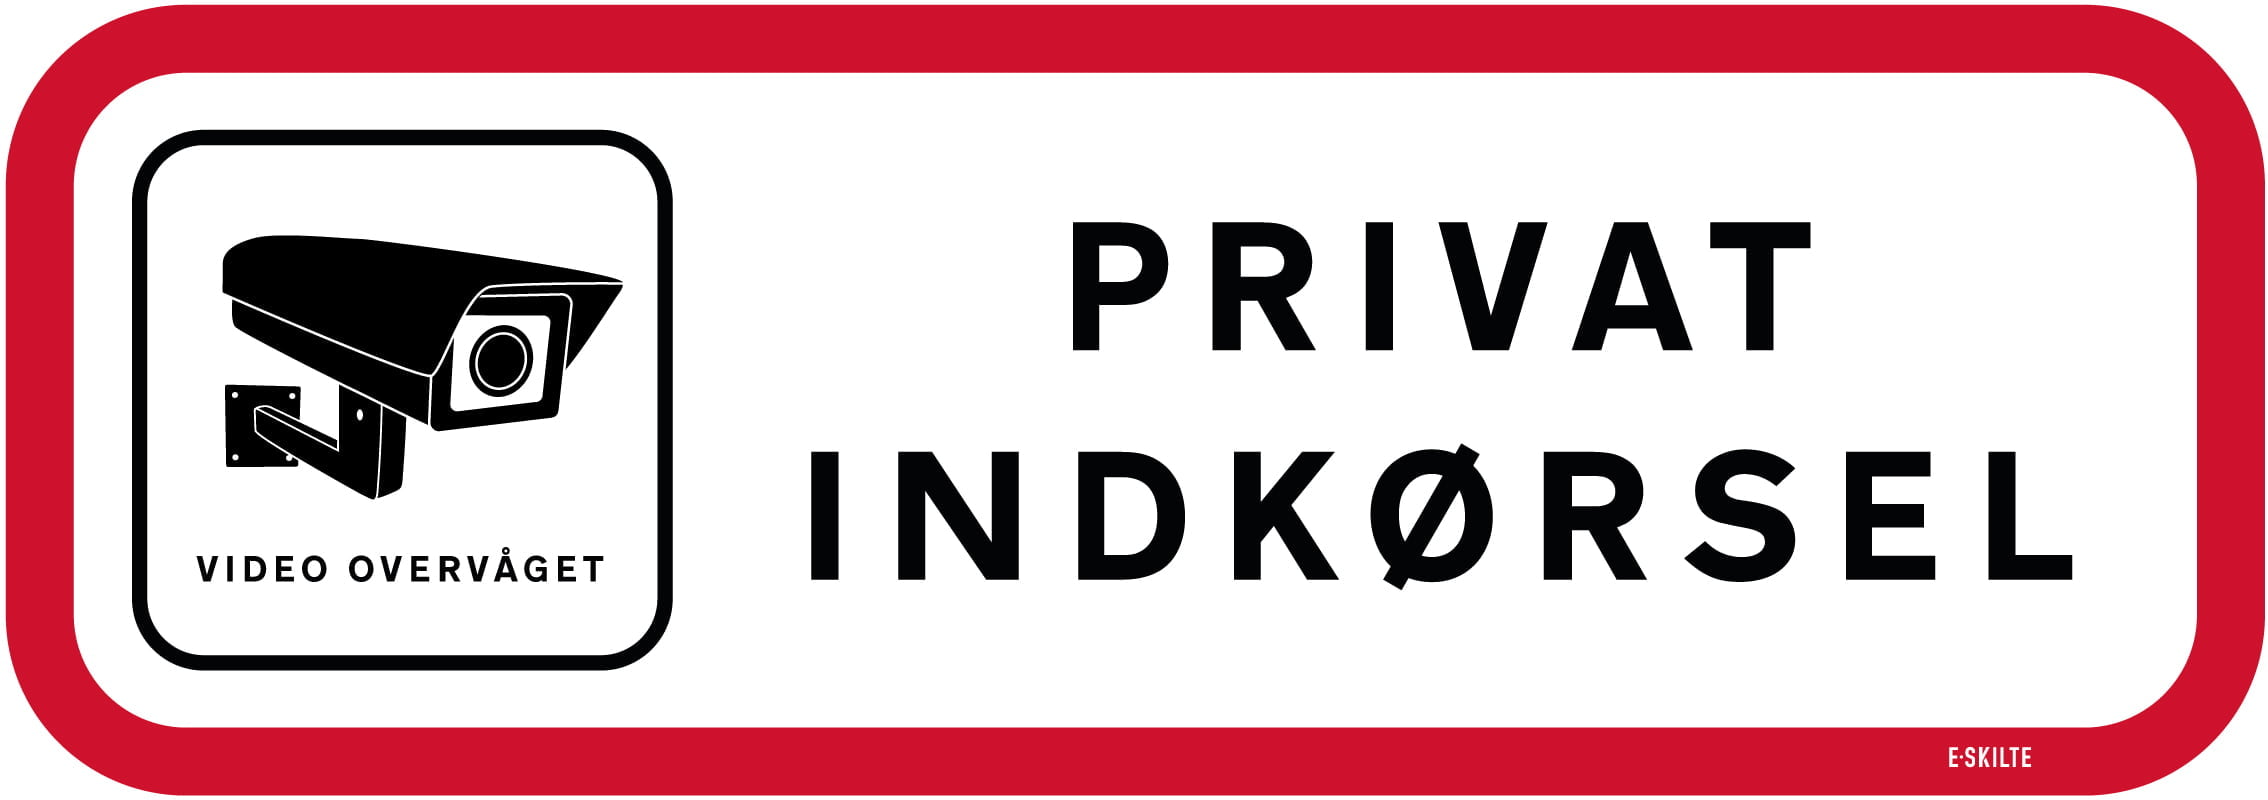 Privat indkørsel skilt